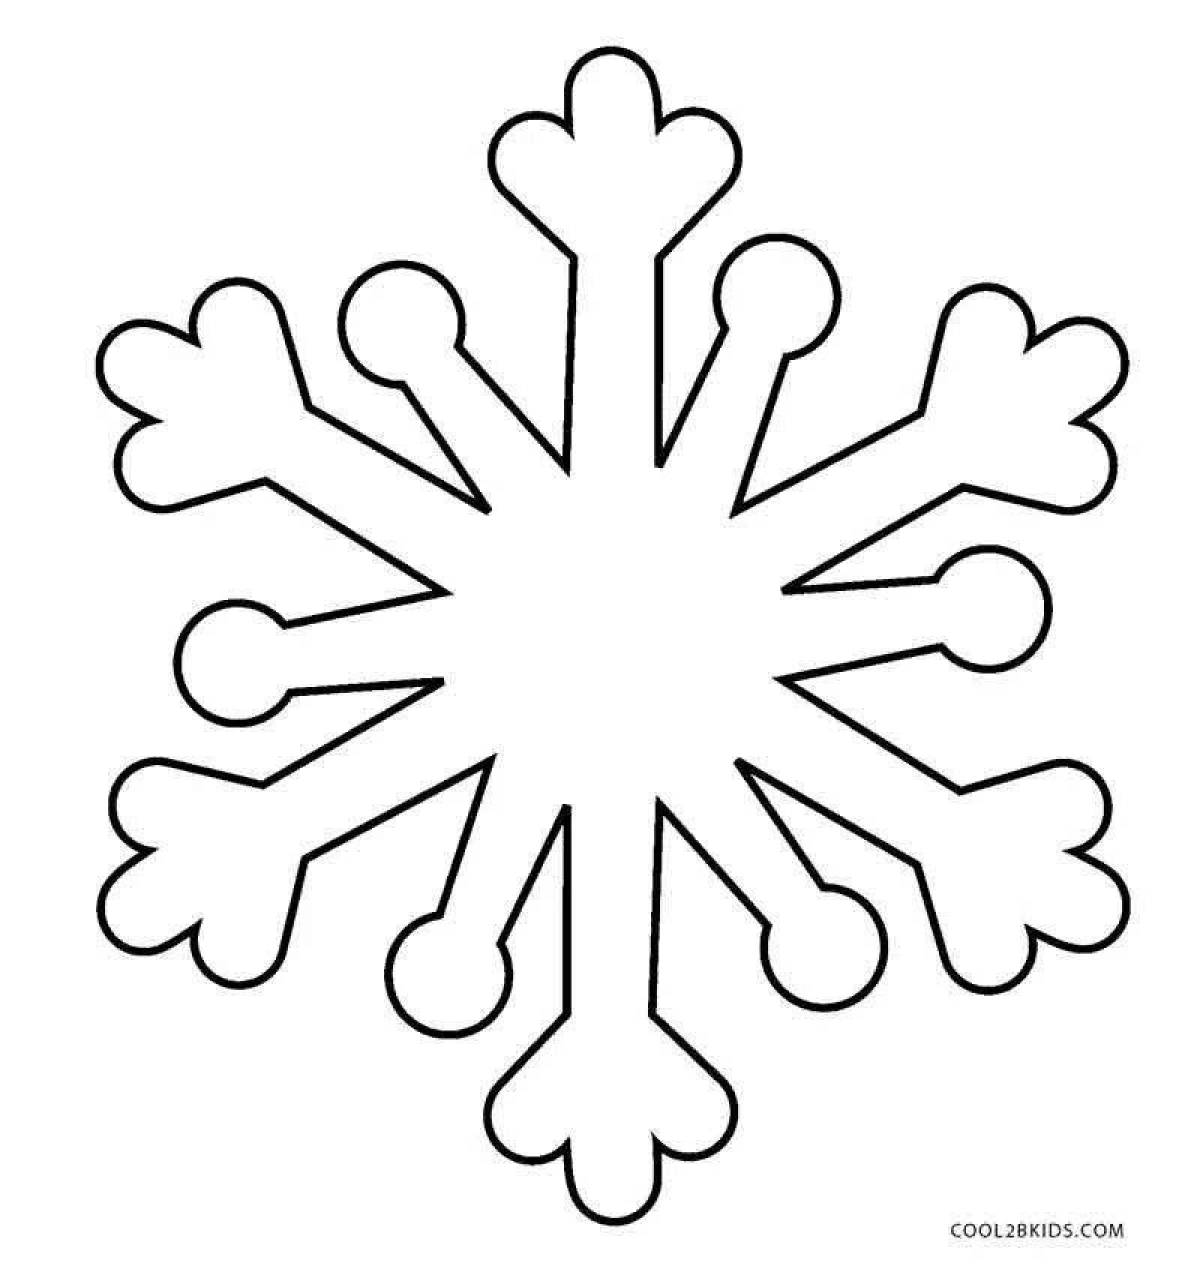 Причудливая раскраска снежинки для детей 4-5 лет